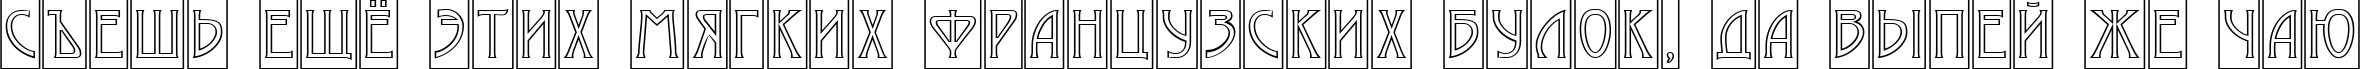 Пример написания шрифтом a_ModernoCmOtl текста на русском